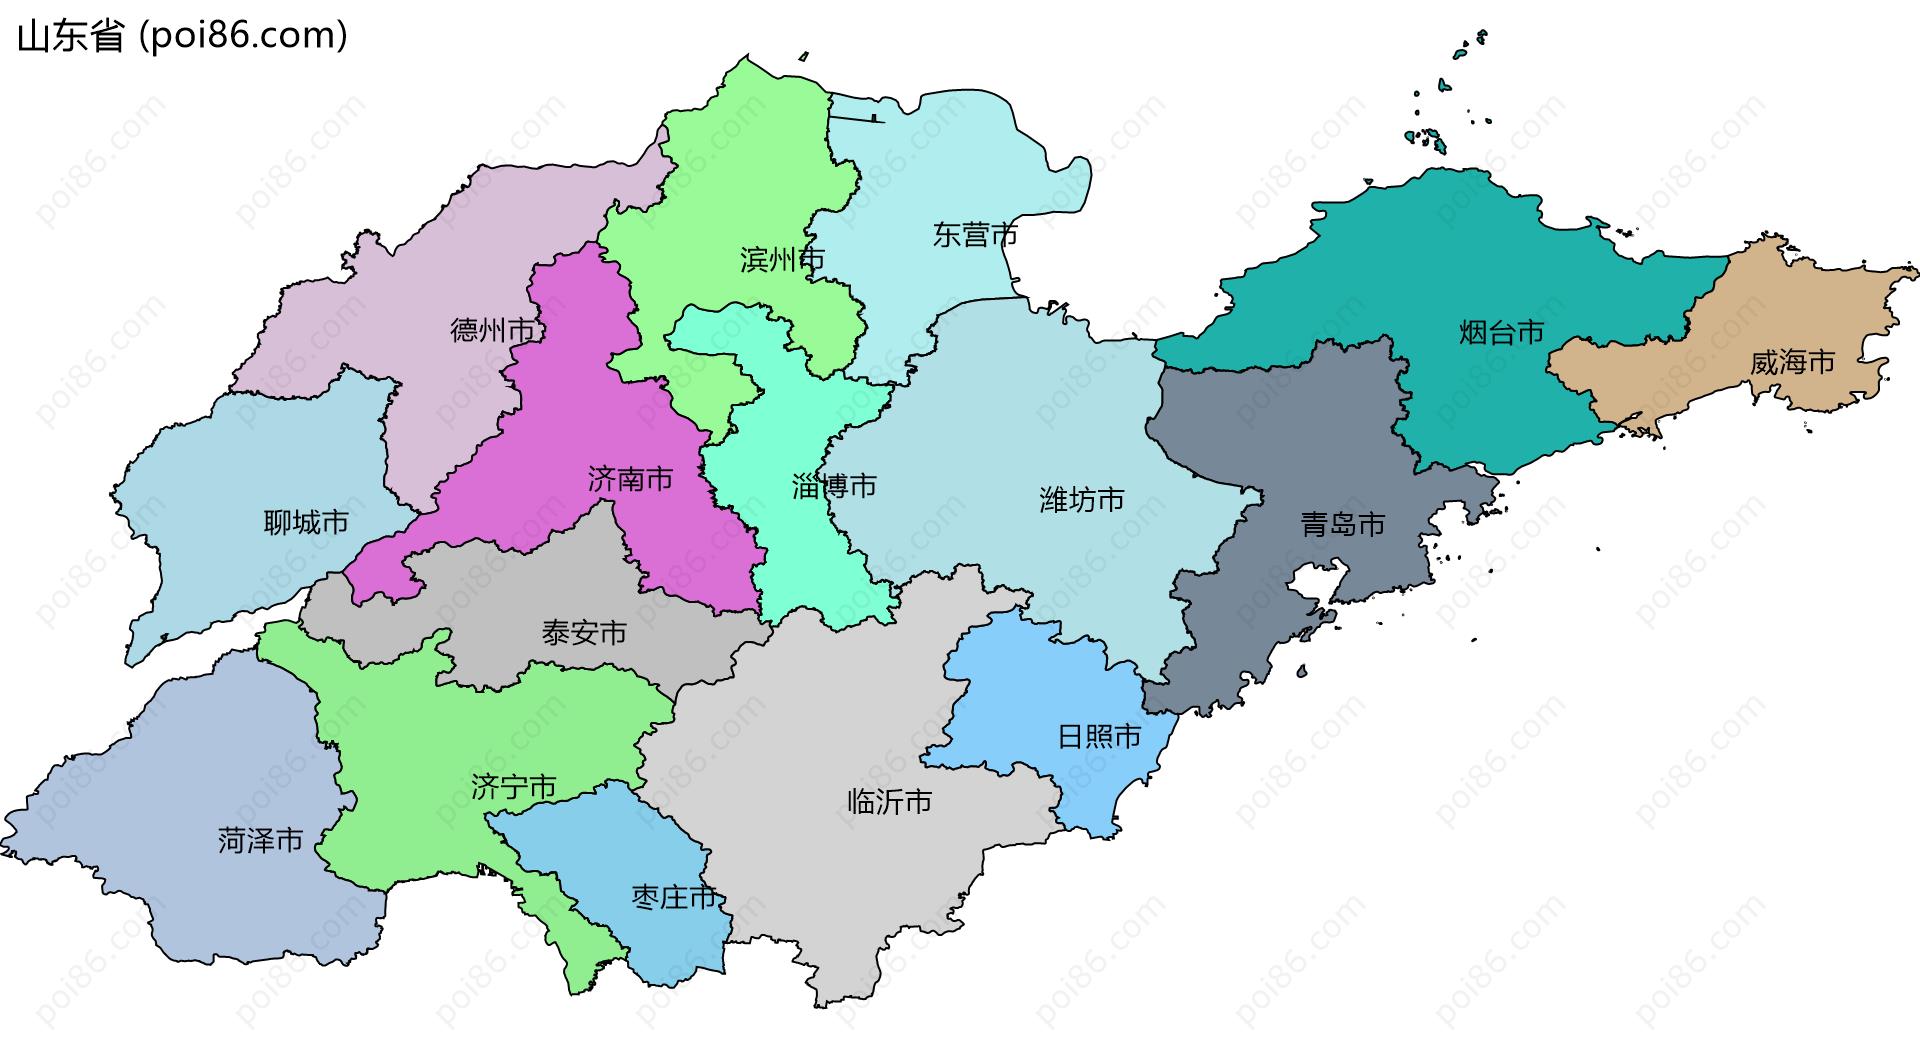 山东省边界地图